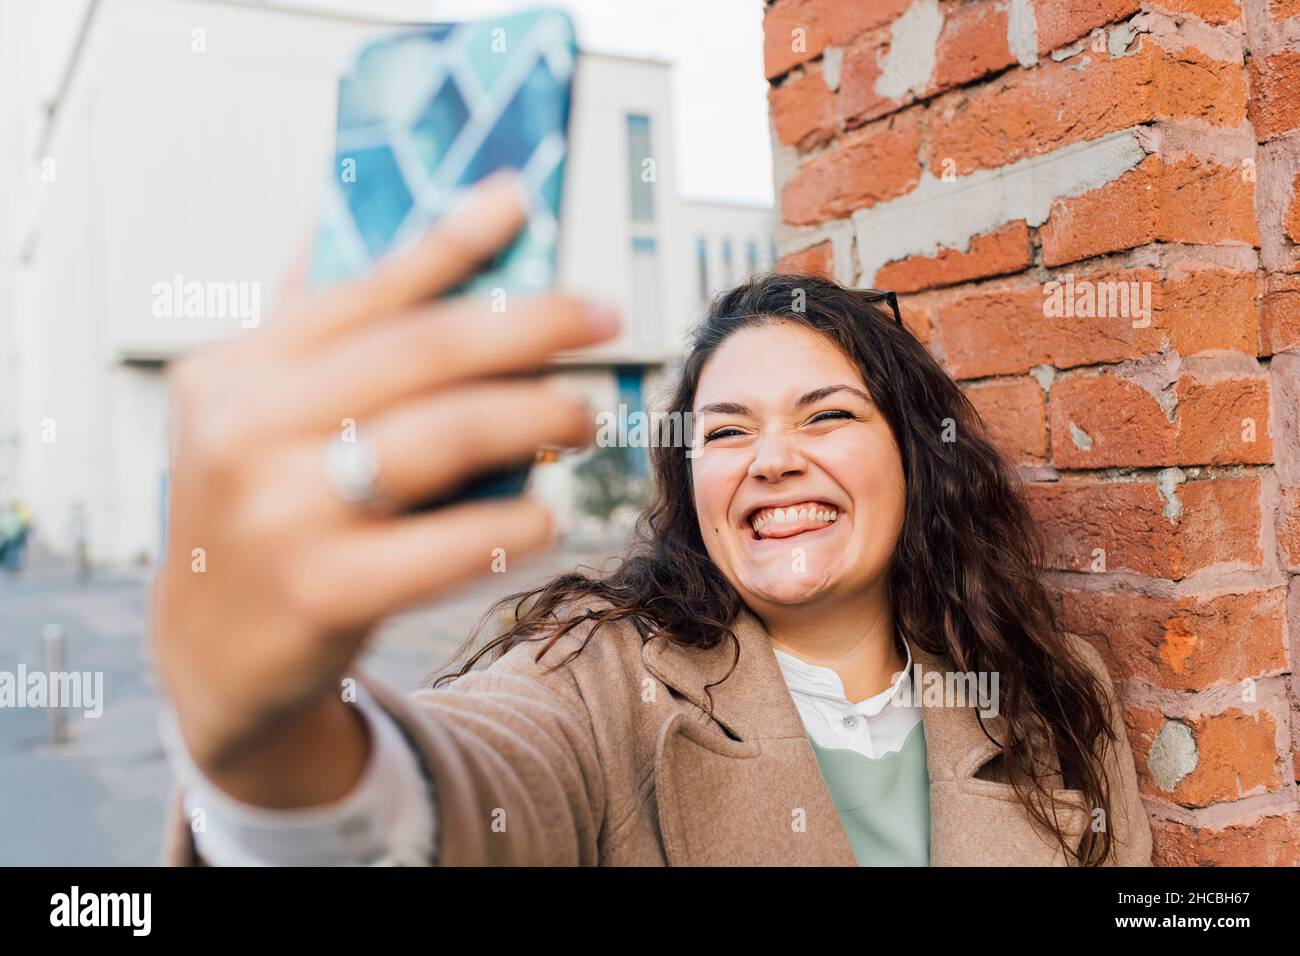 Femme aux courbes qui colle à la langue tout en prenant le selfie sur un téléphone portable Banque D'Images